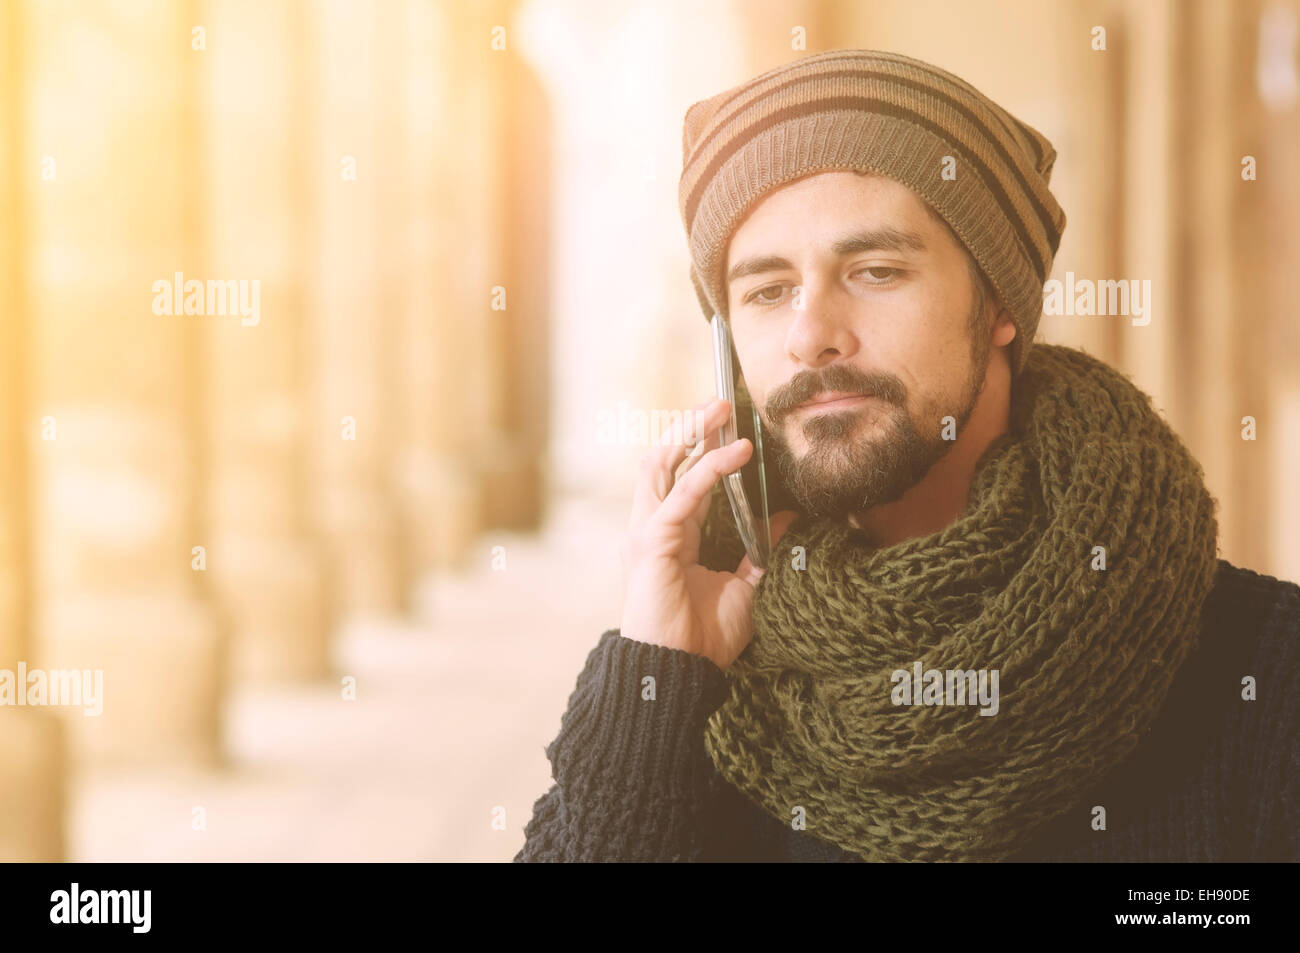 Estilo de vida retrato de un hombre joven con un teléfono inteligente en el exterior tonos cálidos filtro aplicado Foto de stock